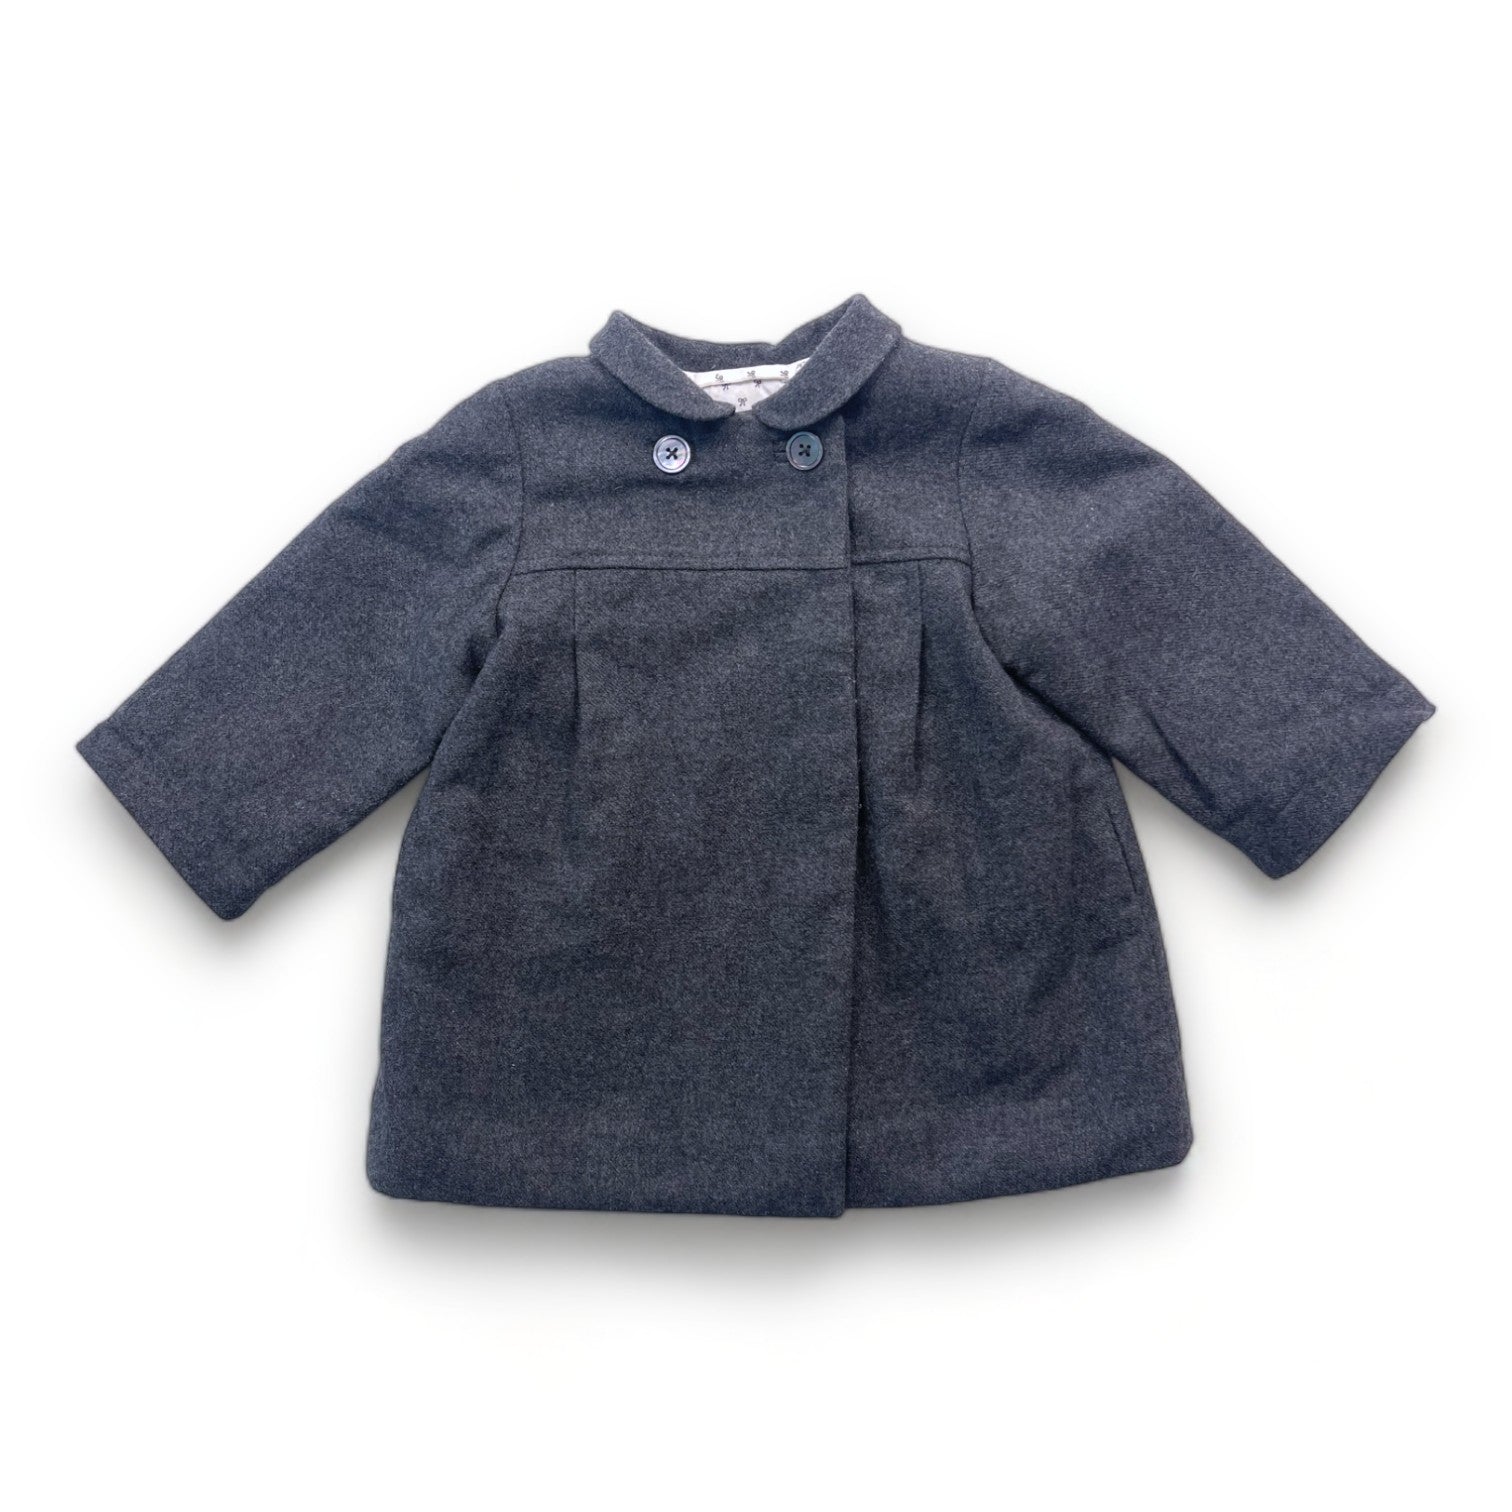 JACADI - Manteau en laine gris - 12 mois